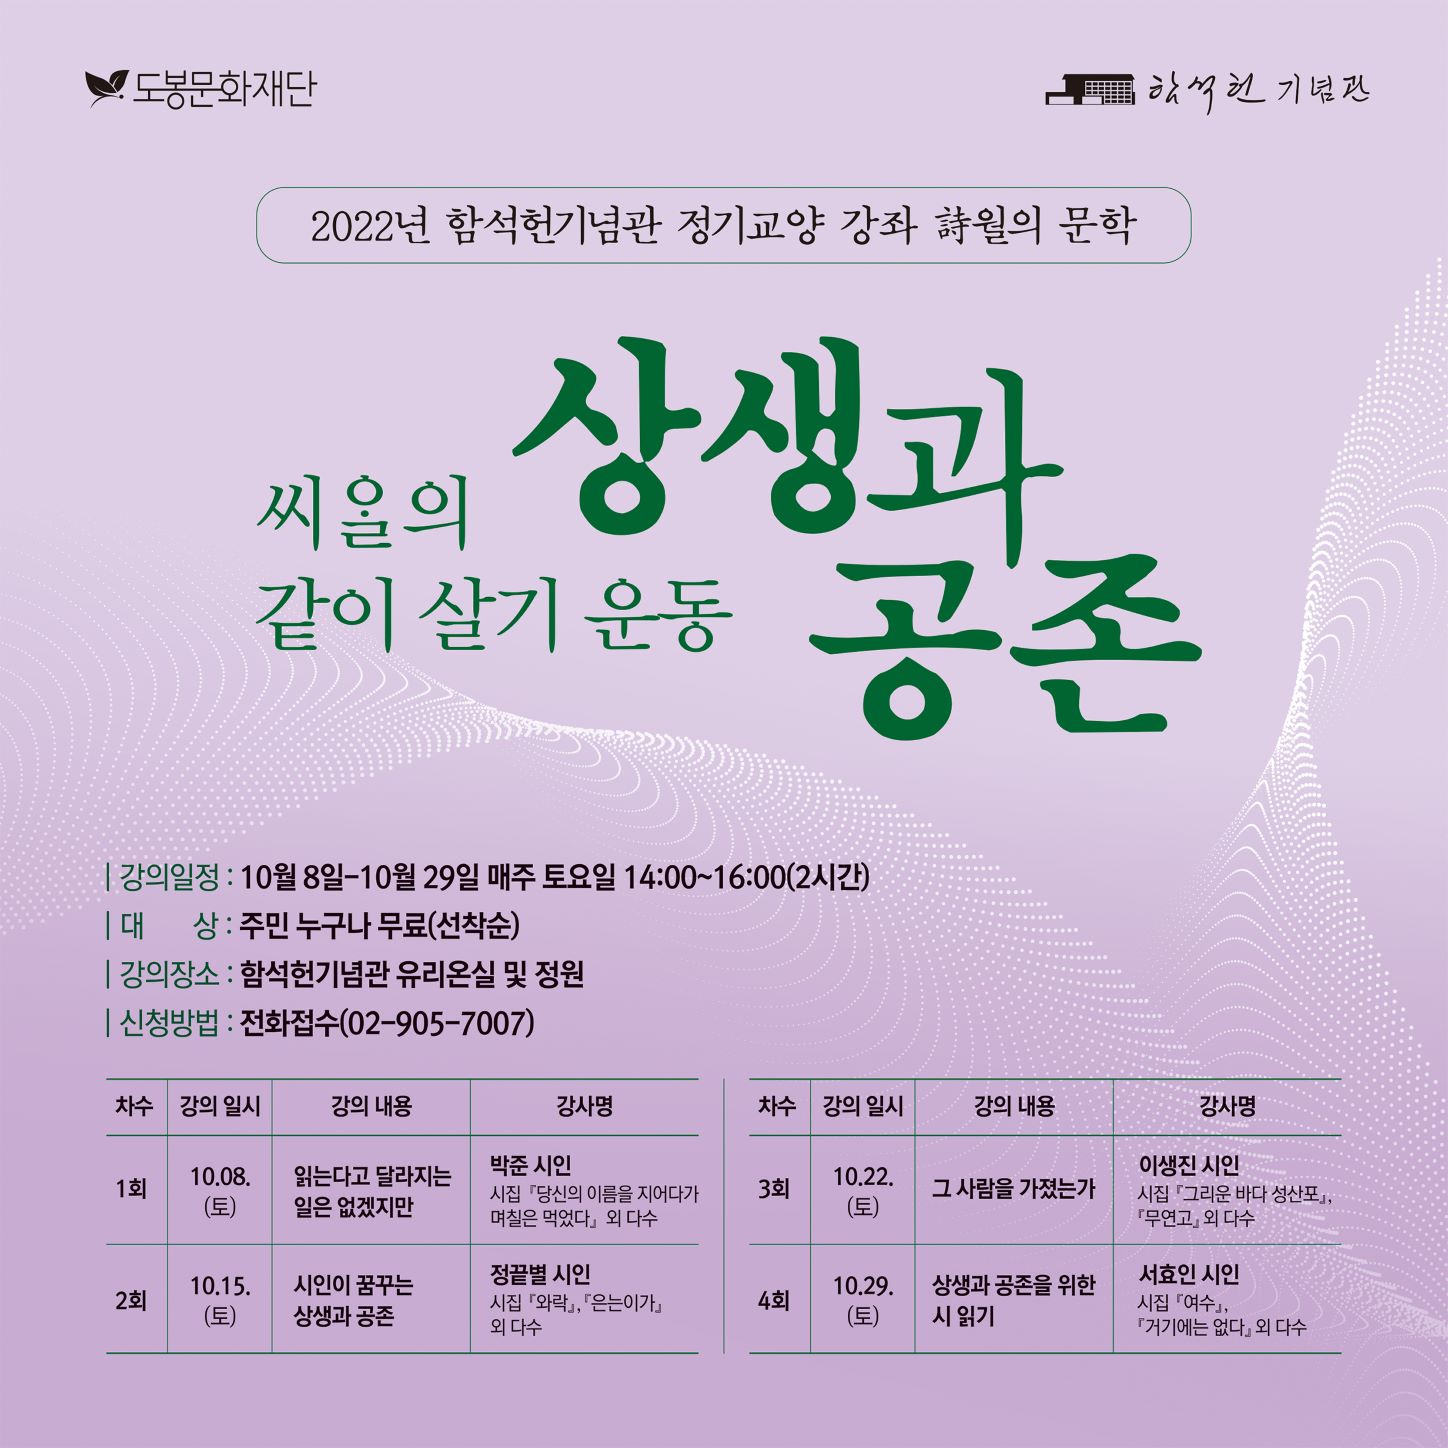 함석헌기념관 주민참여프로그램 '詩월의 문학'